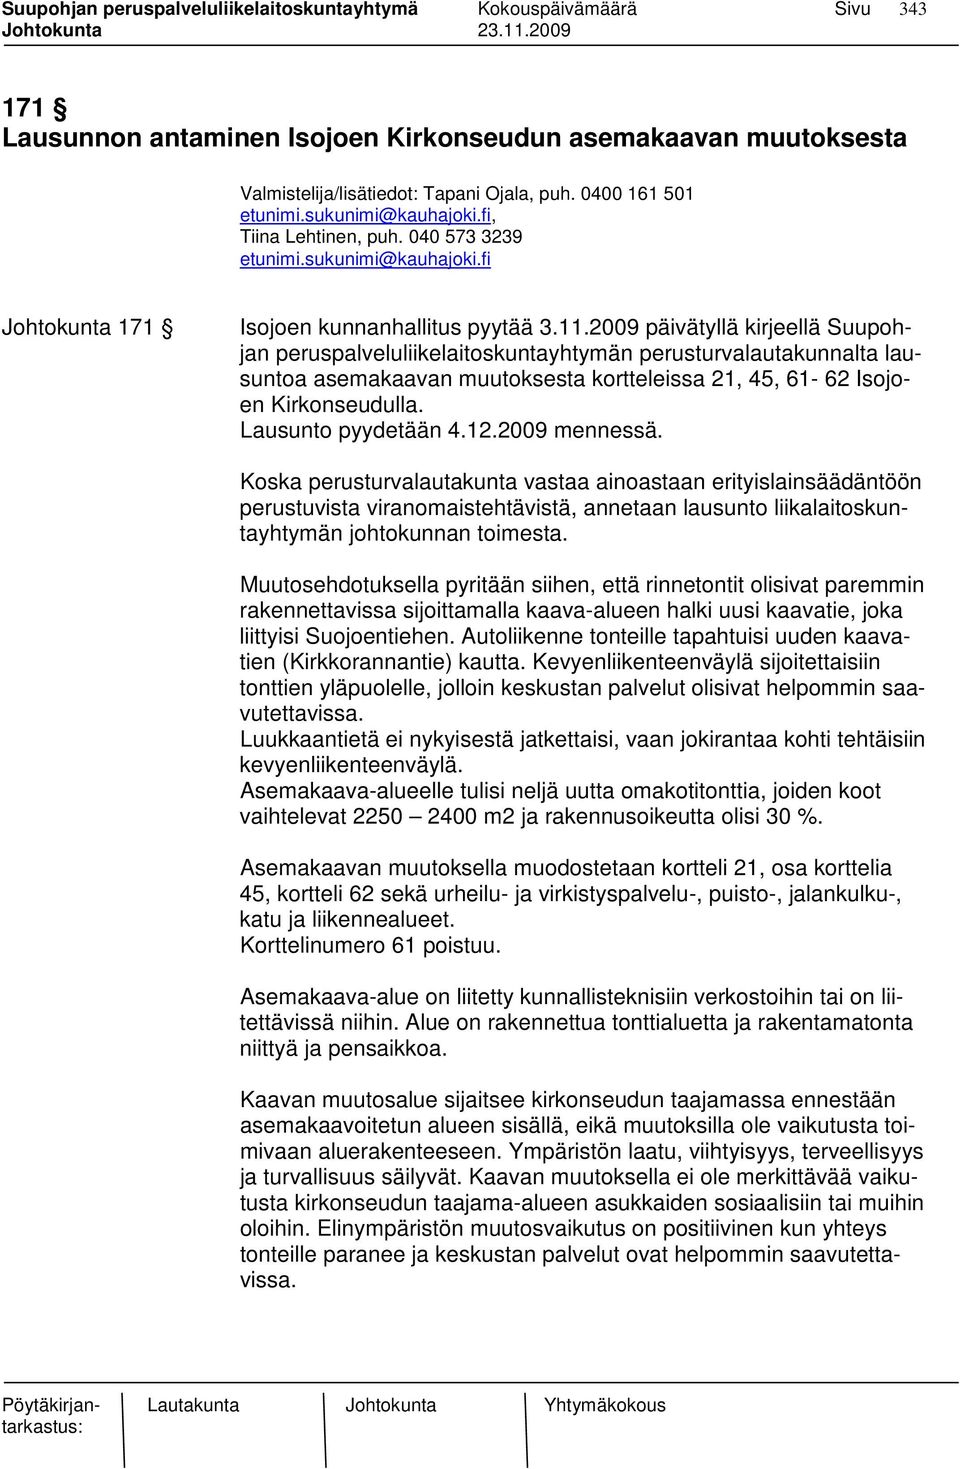 2009 päivätyllä kirjeellä Suupohjan peruspalveluliikelaitoskuntayhtymän perusturvalautakunnalta lausuntoa asemakaavan muutoksesta kortteleissa 21, 45, 61-62 Isojoen Kirkonseudulla.